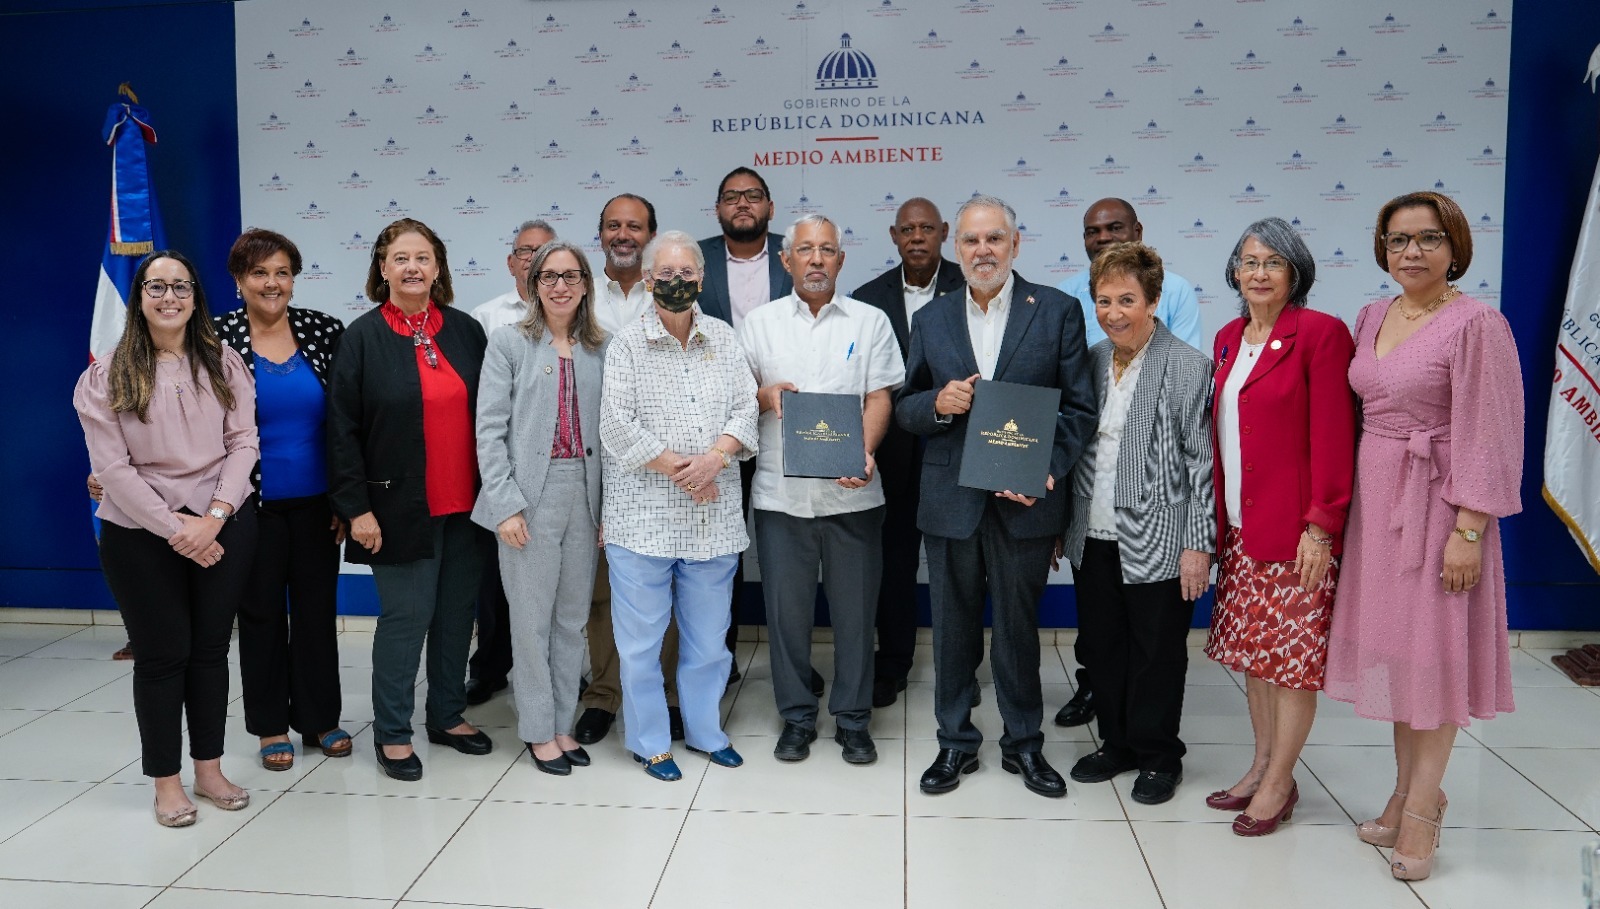 REPÚBLICA DOMINICANA: Ministro de Medio Ambiente resalta importancia de la educación ambiental en la protección de los recursos naturales